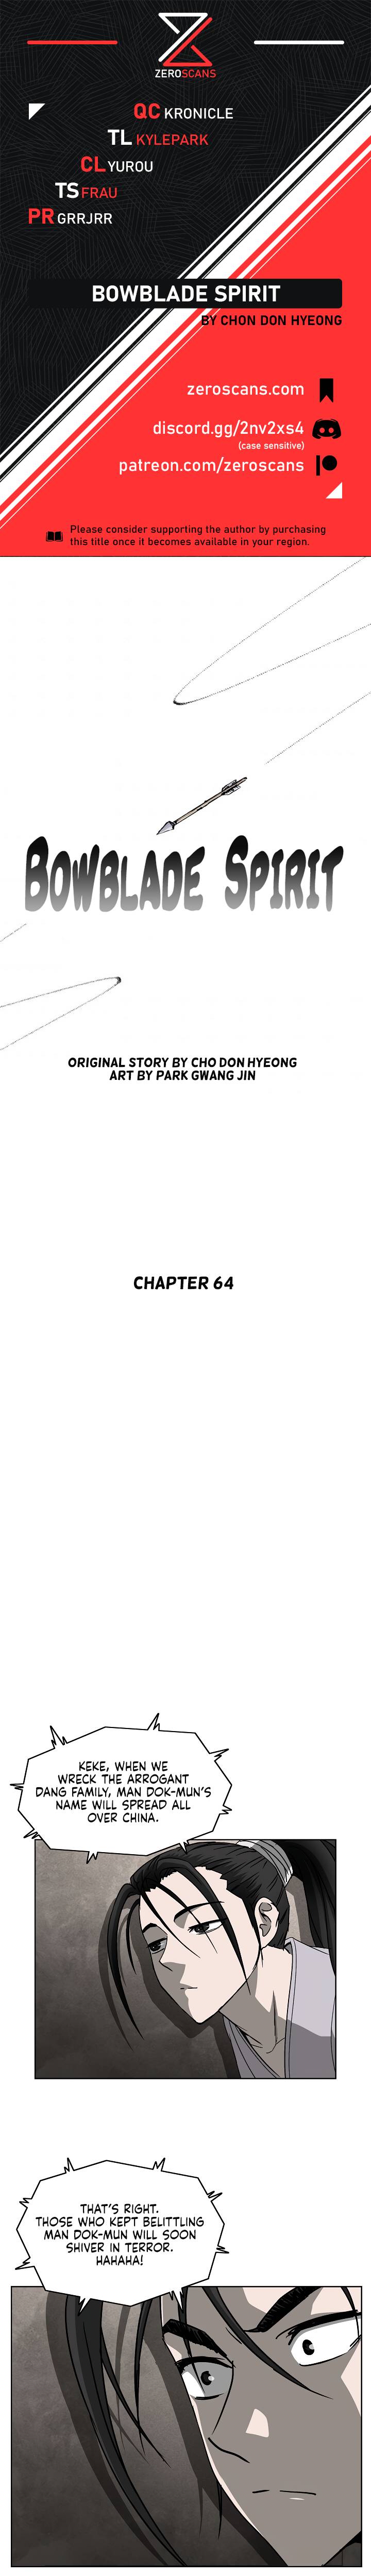 Bowblade Spirit - Chapter 64 Page 1